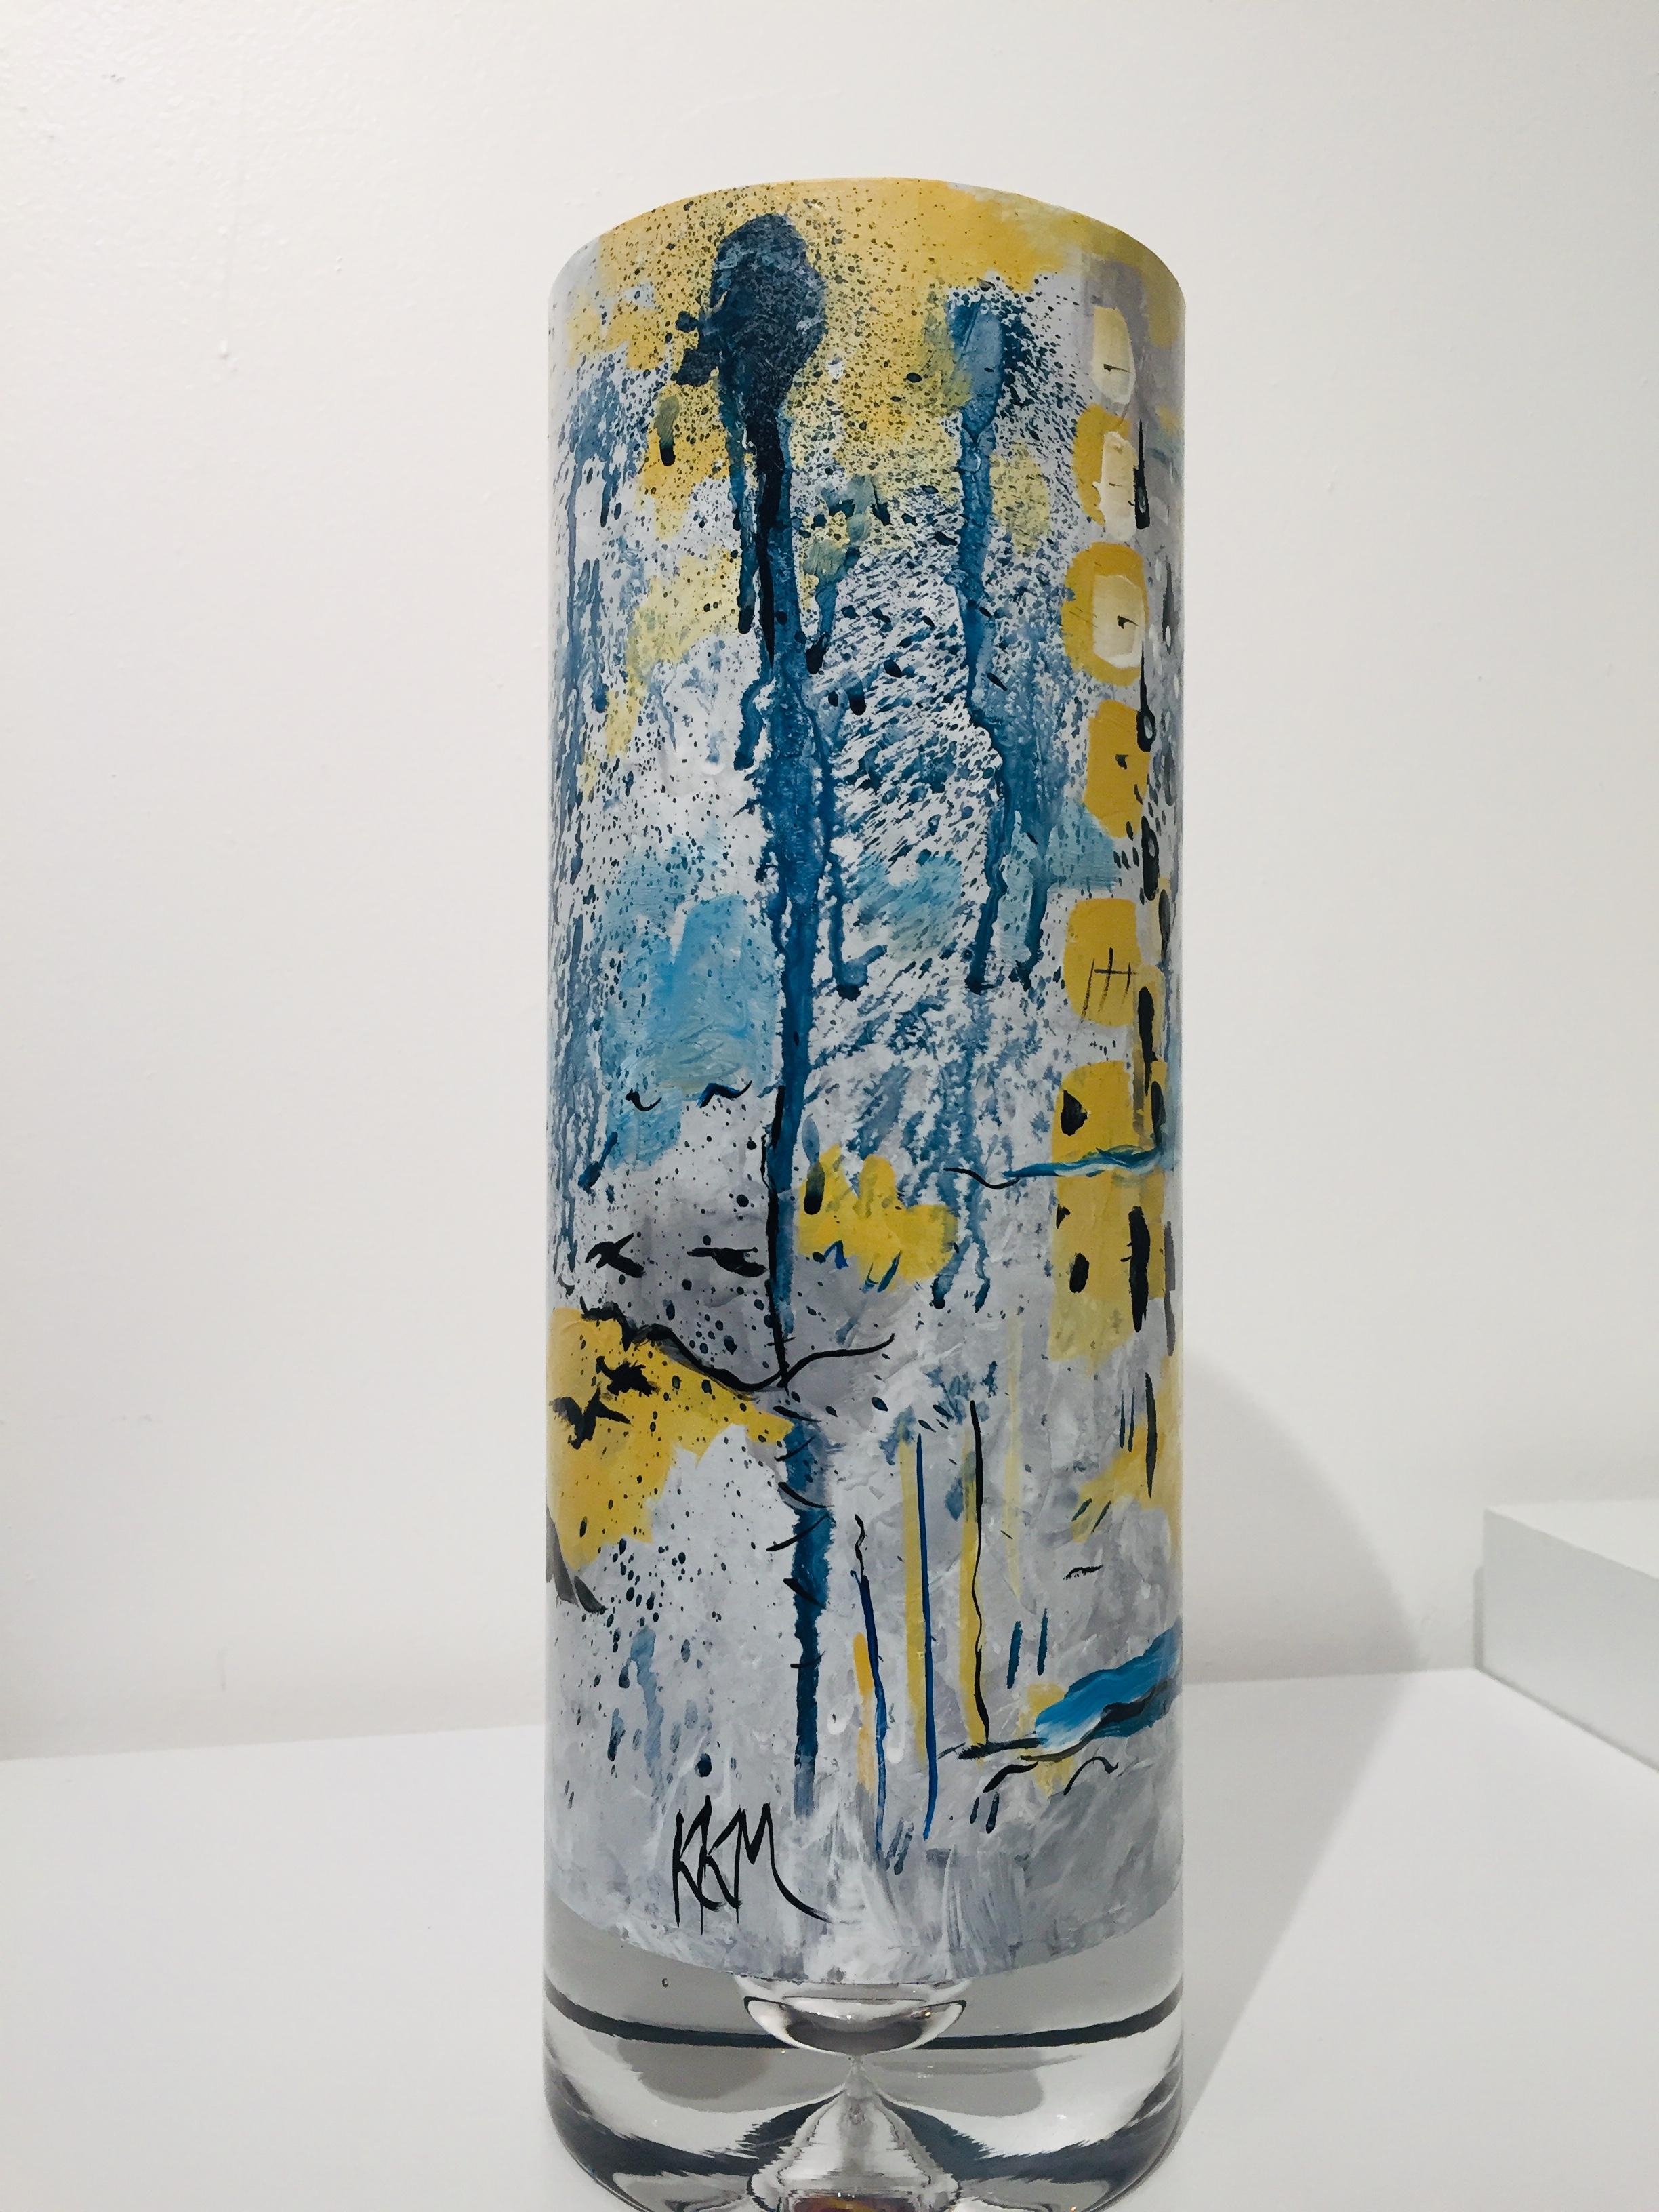 Vase en verre unique peint à la main par l'artiste Kathleen Kane-Murrell. Ce vase est parfaitement rendu en peinture acrylique sourde et arrive avec une note de l'artiste. Première fois disponible au public.

 Les images 2 et 5 montrent les cinq